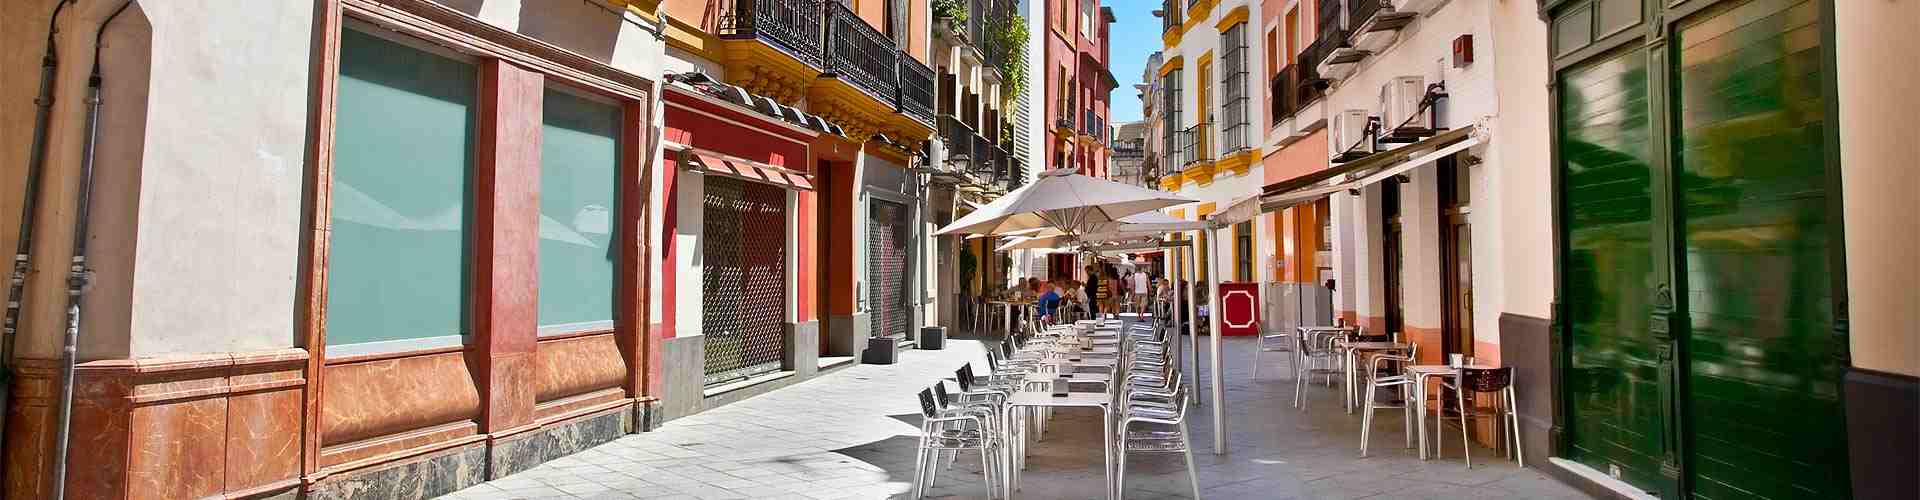 Restaurantes cerca del ayuntamiento en Lleida                    